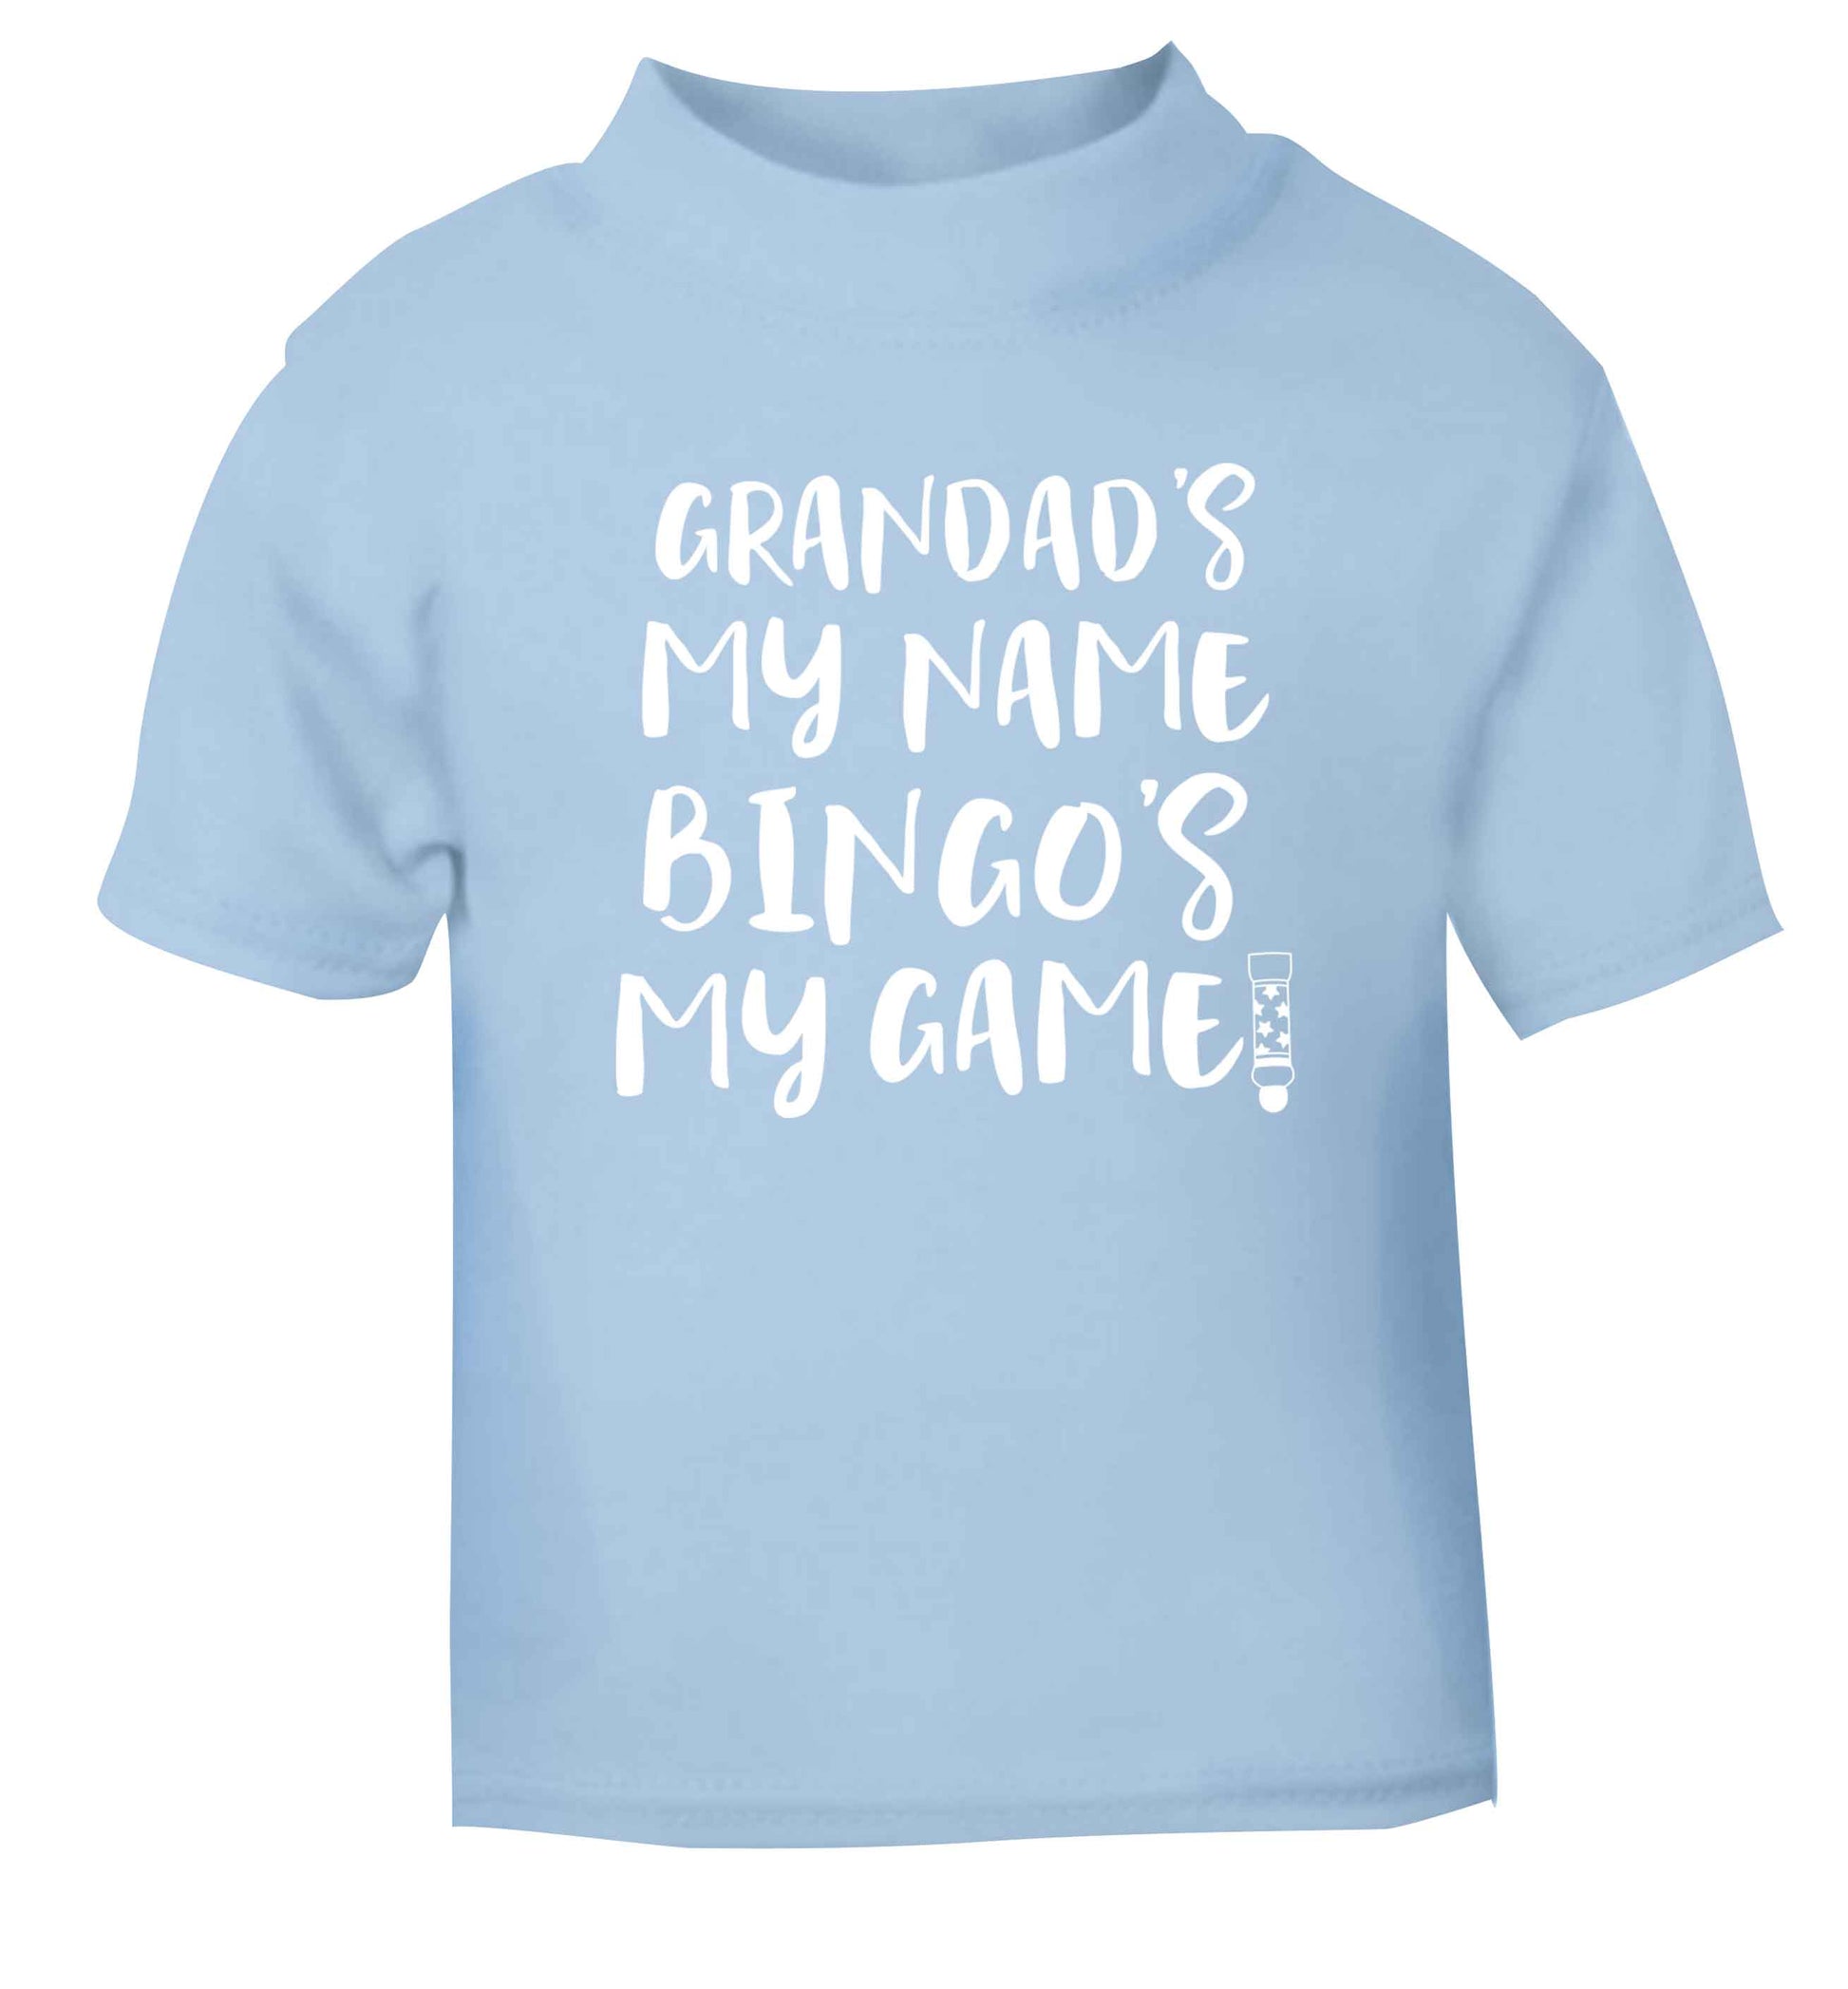 Grandad's my name bingo's my game! light blue Baby Toddler Tshirt 2 Years